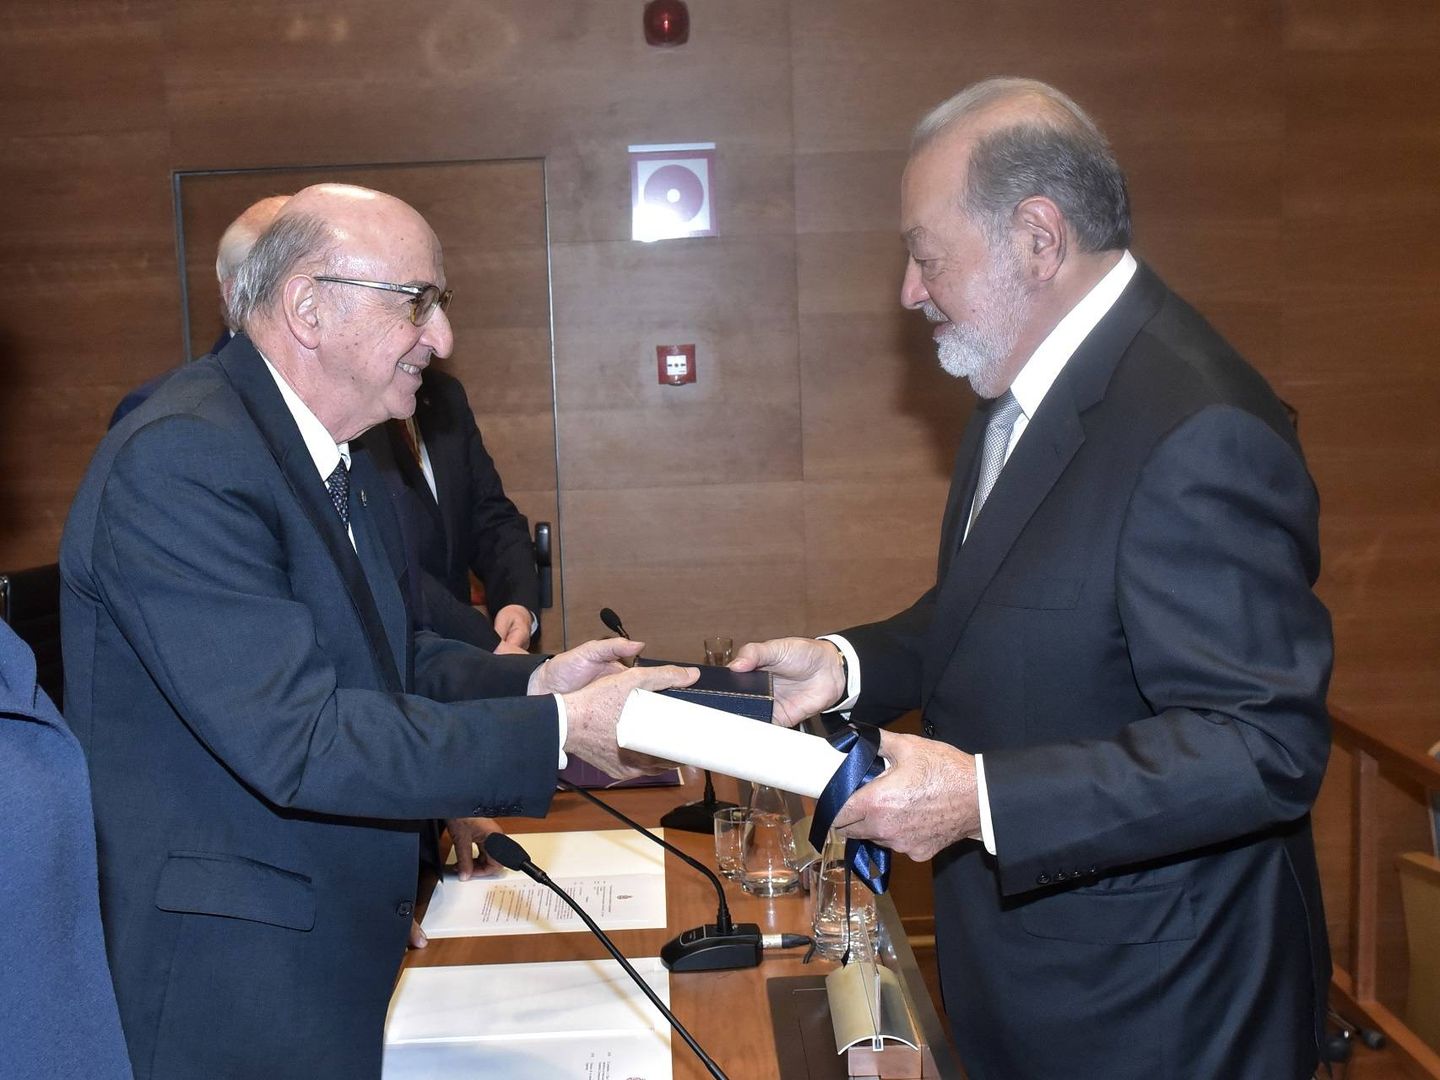  El magnate mexicano recibe su diploma de manos del presidente de la RAI.